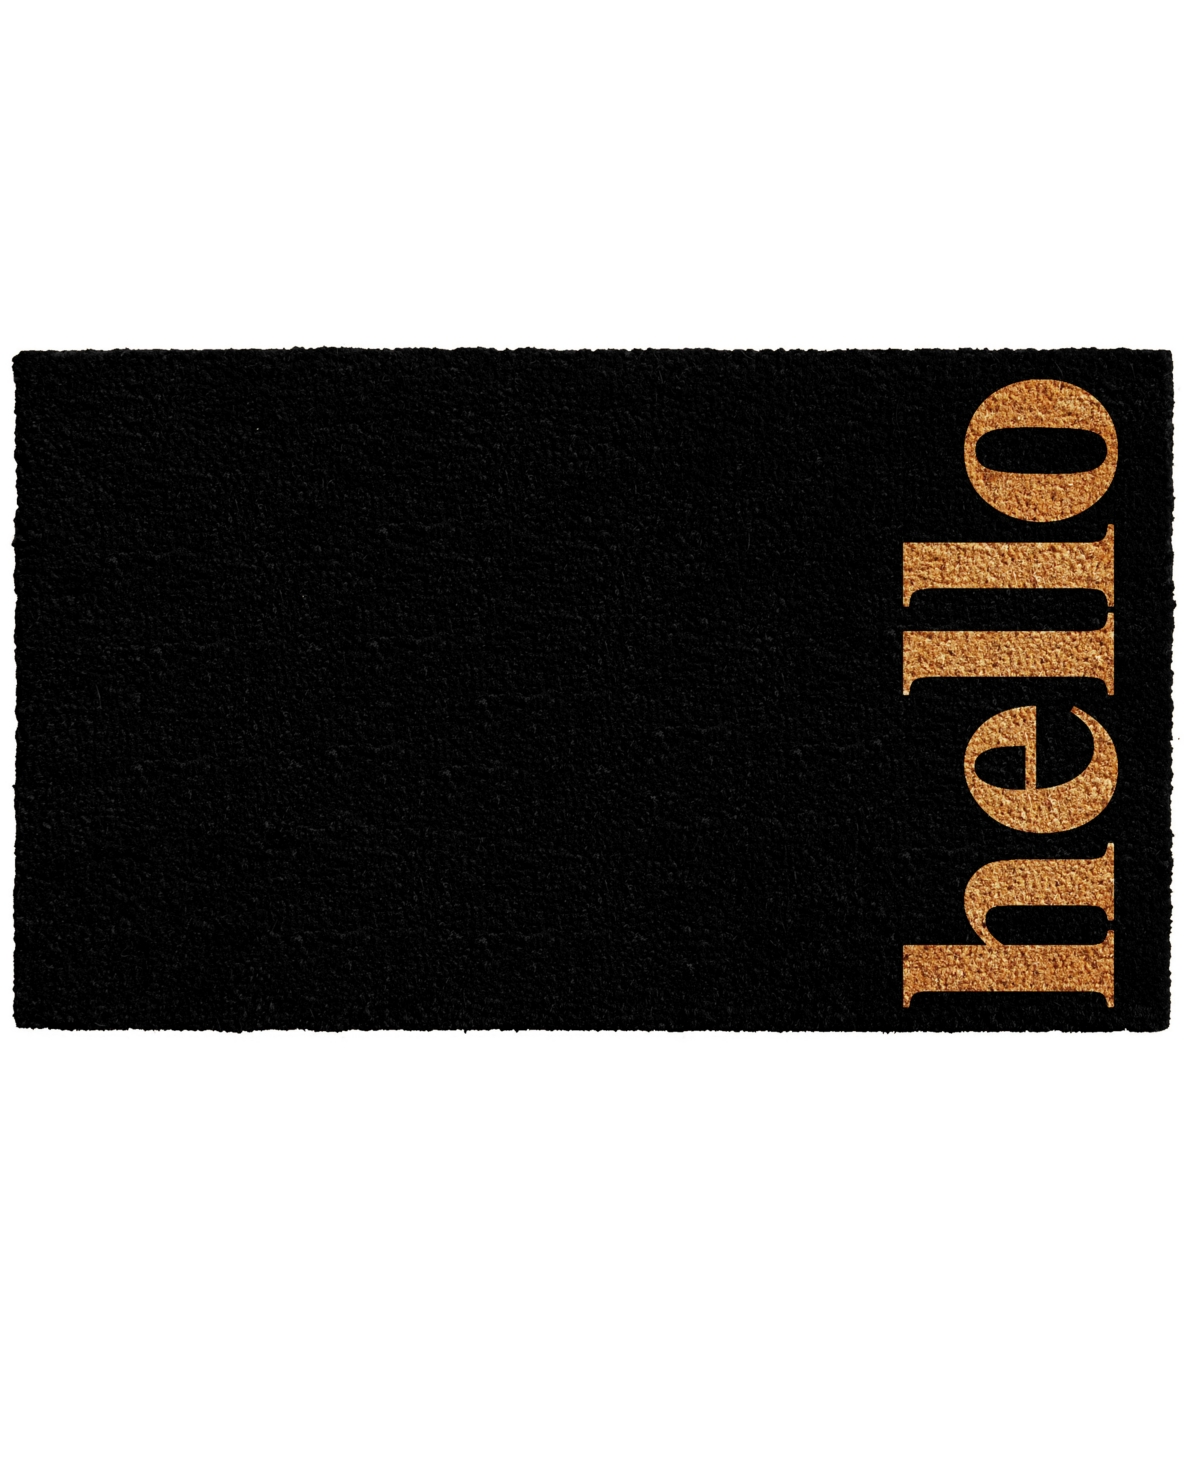 Home & More Vertical Hello Coir/vinyl Doormat, 24" X 36" In Black,natural